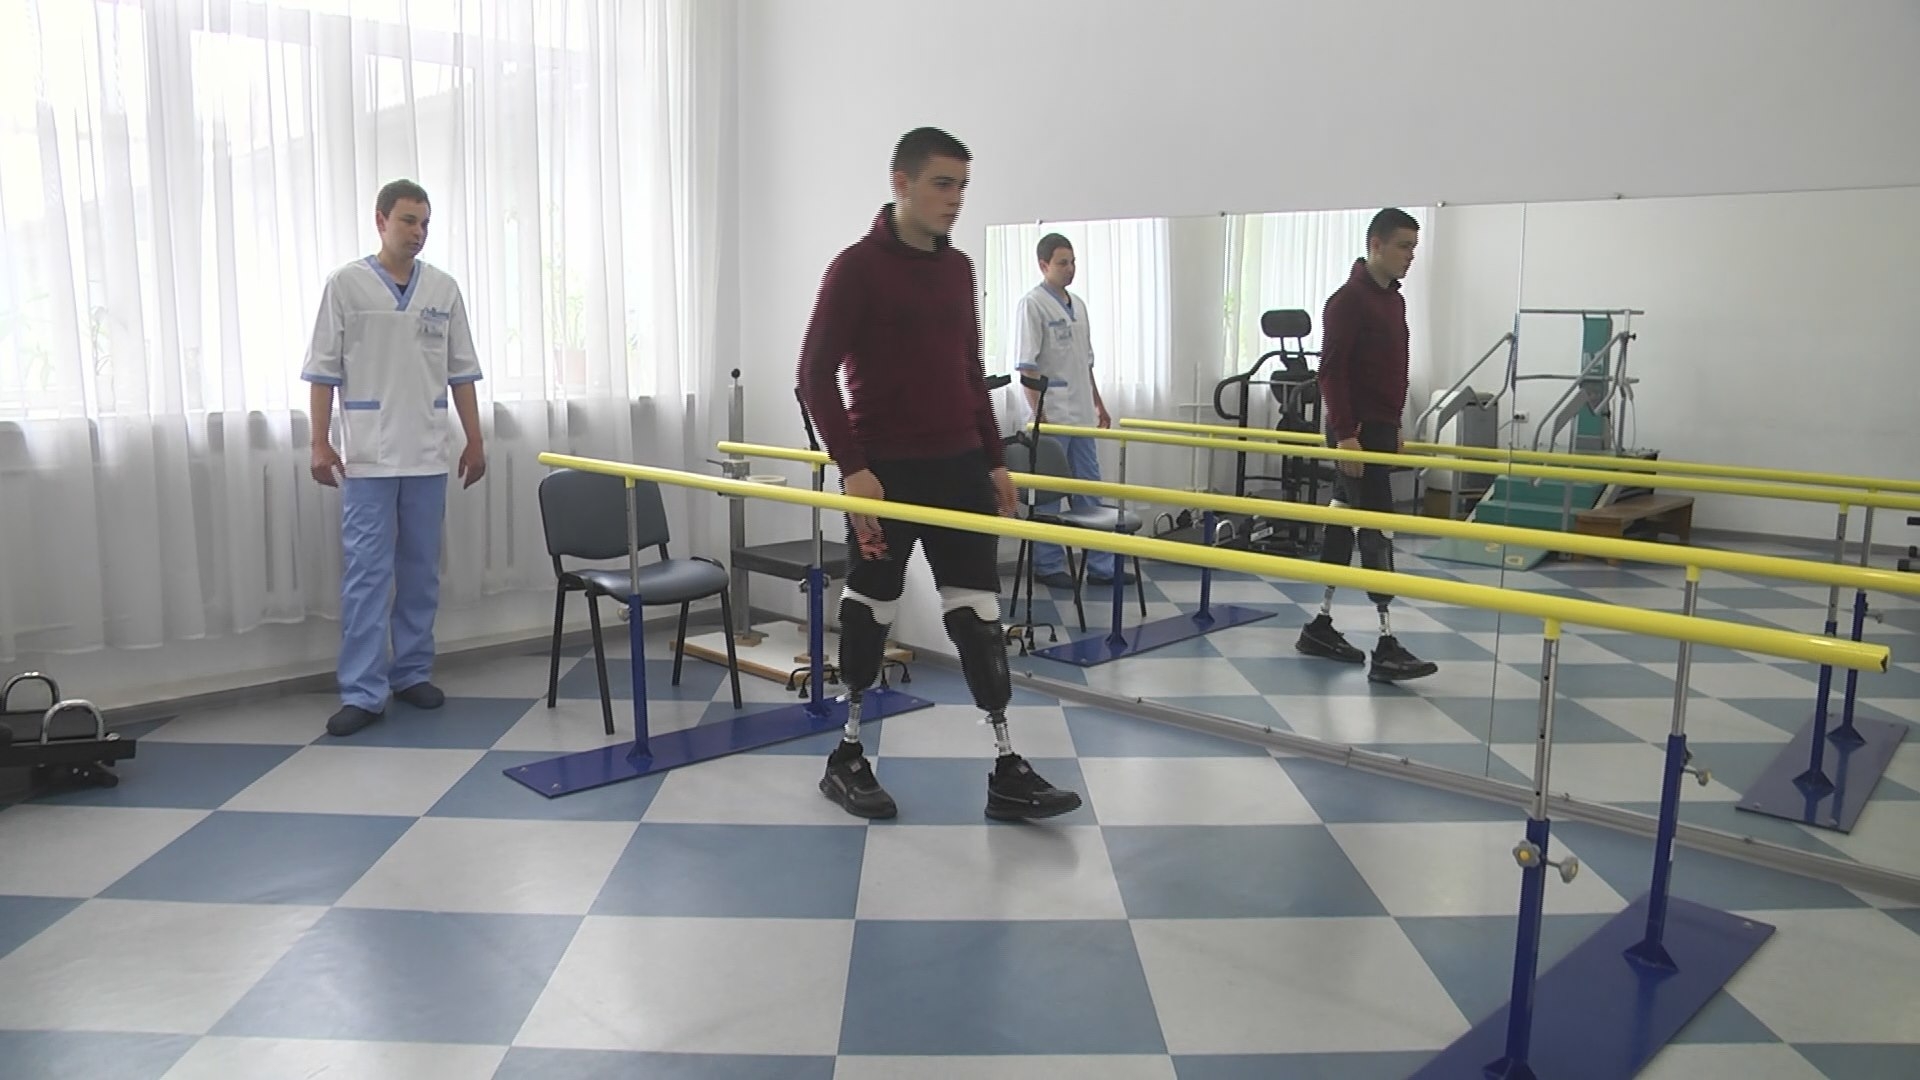 Володимир Авдєєв, який втратив обидві ноги і вчиться ходити на протезах: "Інвалідність – не вирок"